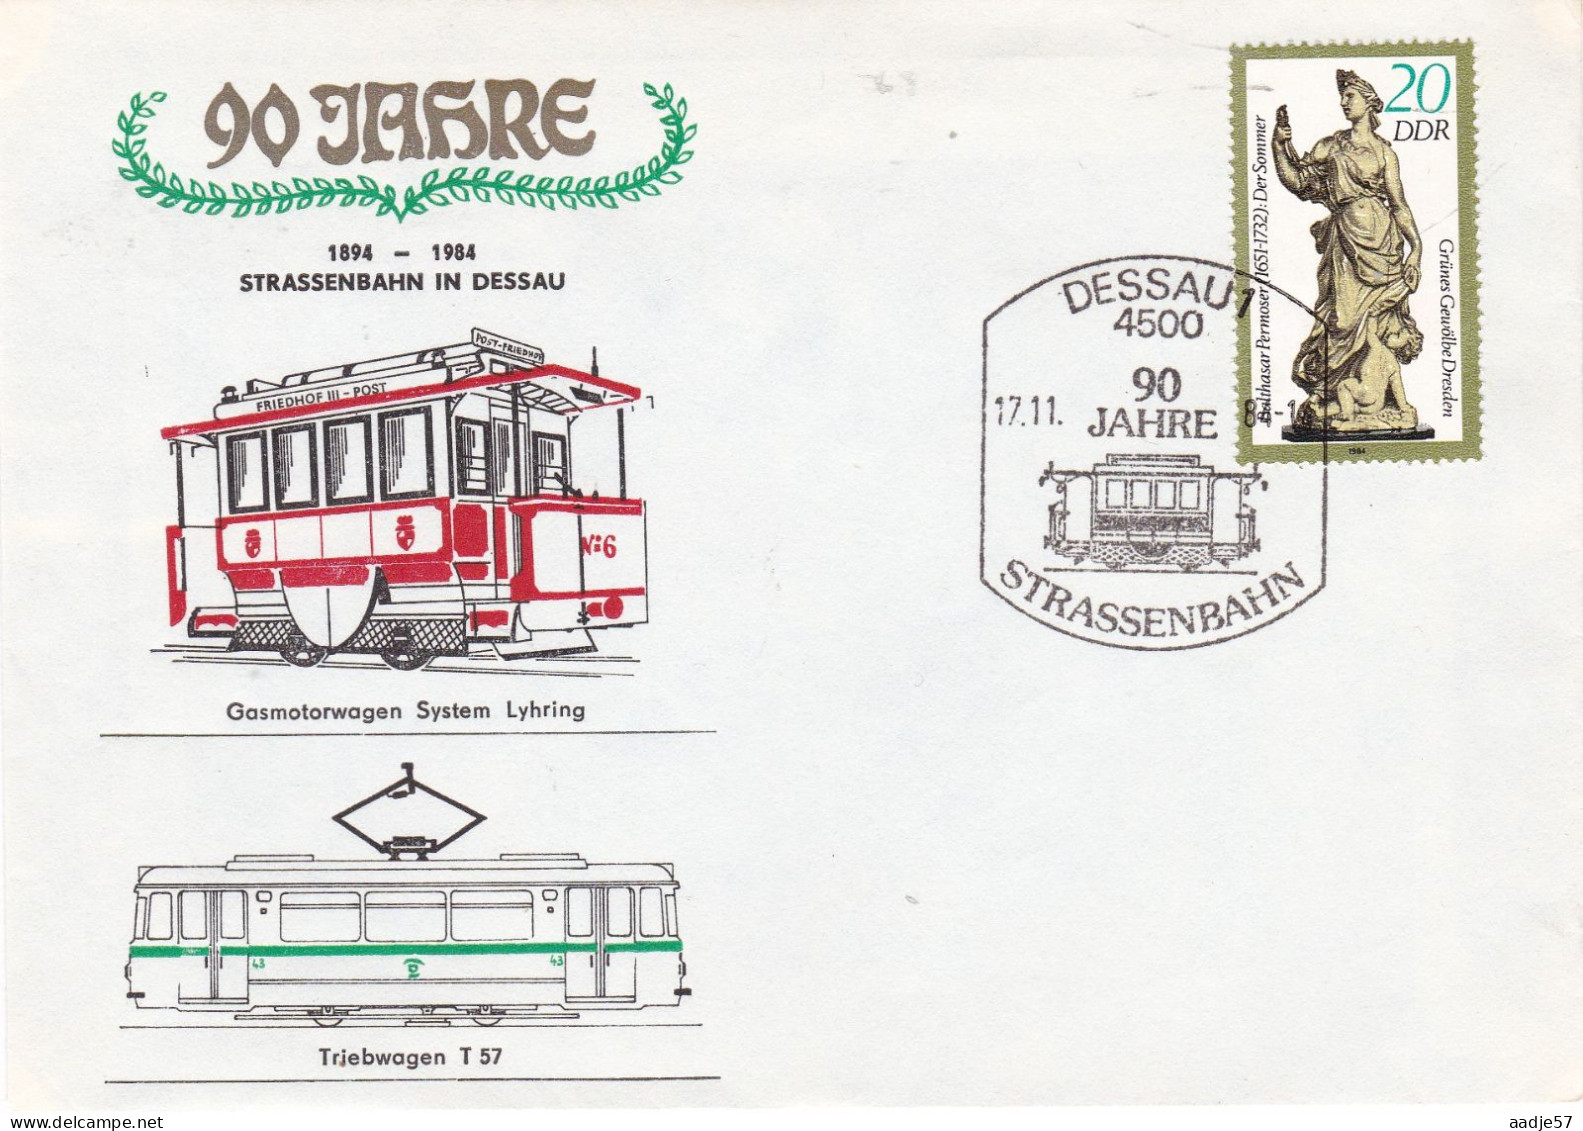 Germany DDR 1984 90 Jahre Strassenbahn In Dessau  17-11-1984 - Tranvías